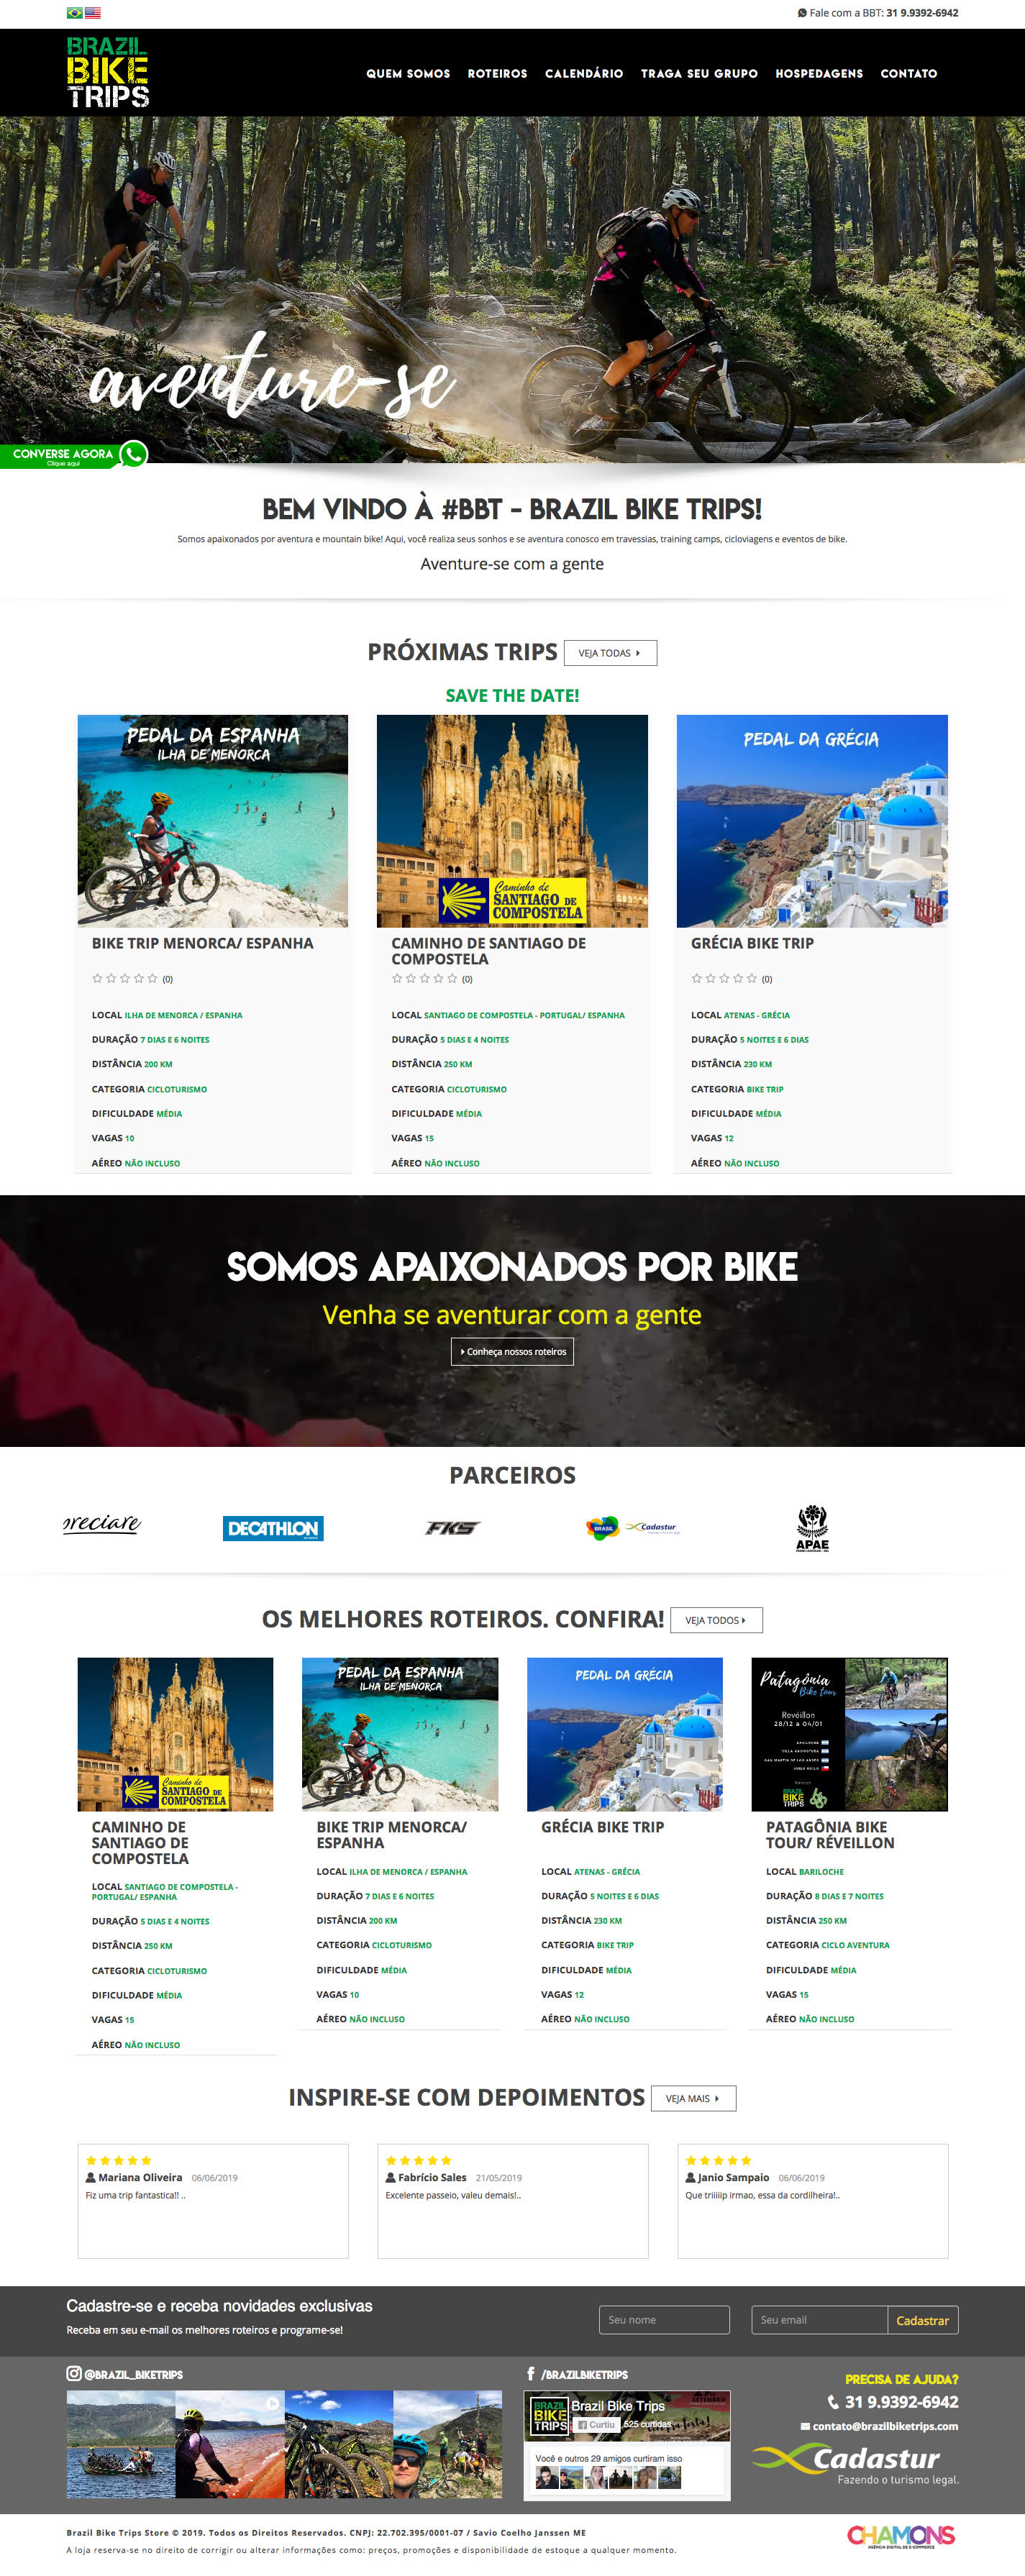 Brazil Bike Trips